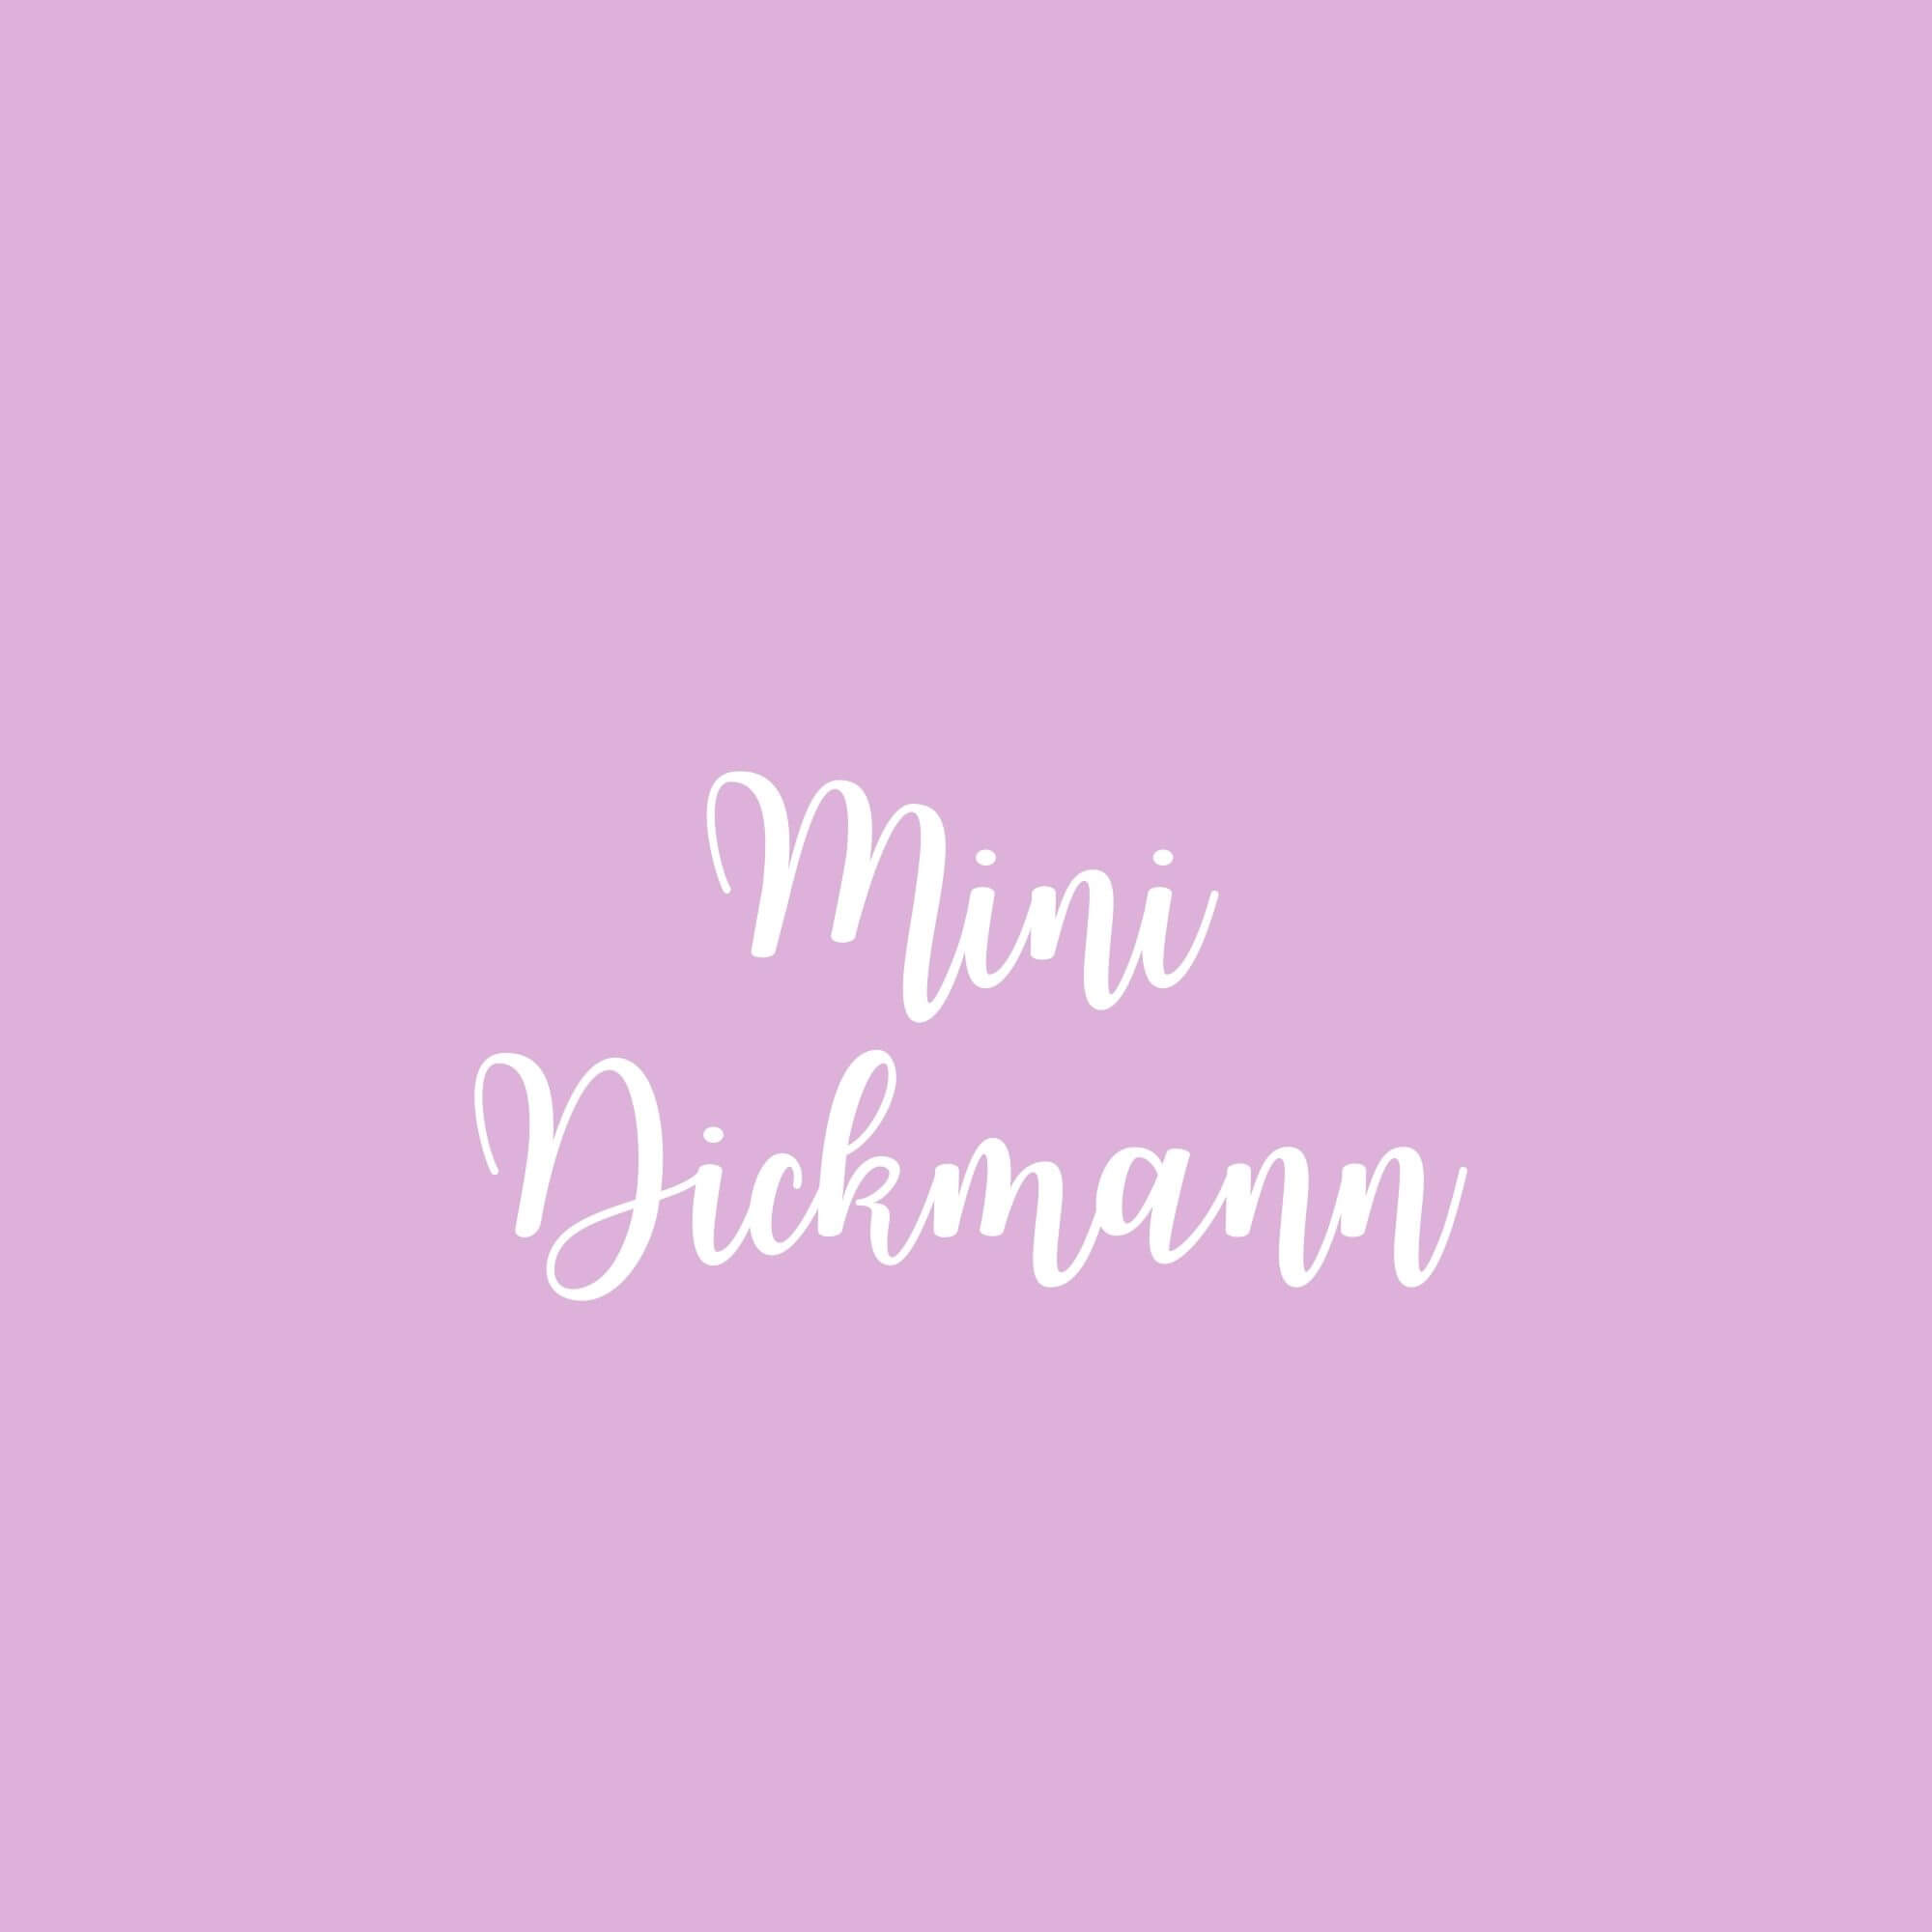 Mini Dickmann